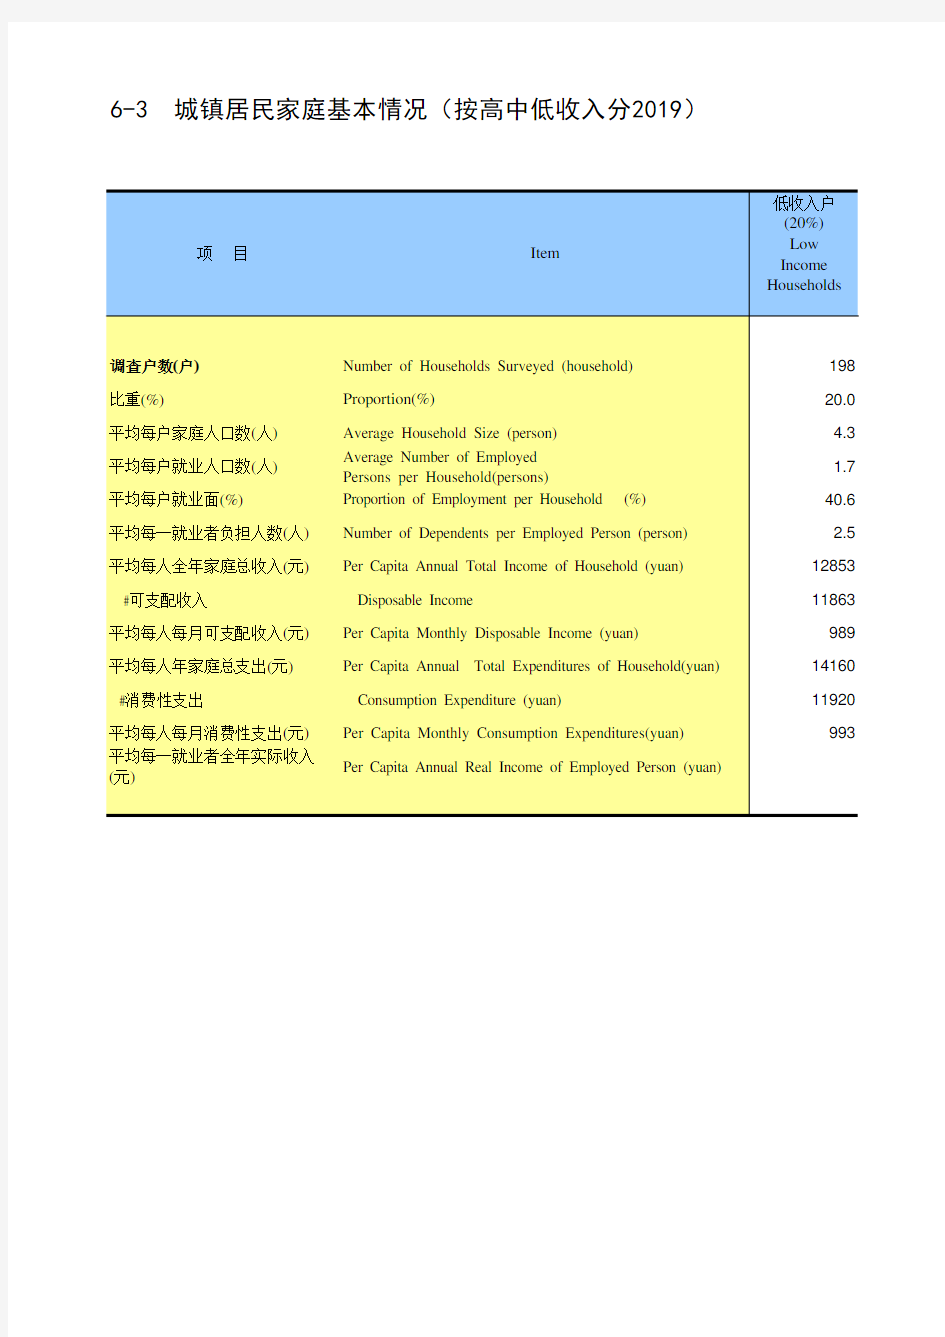 海南省统计年鉴2020社会经济发展指标：城镇居民家庭基本情况(按高中低收入分2019)